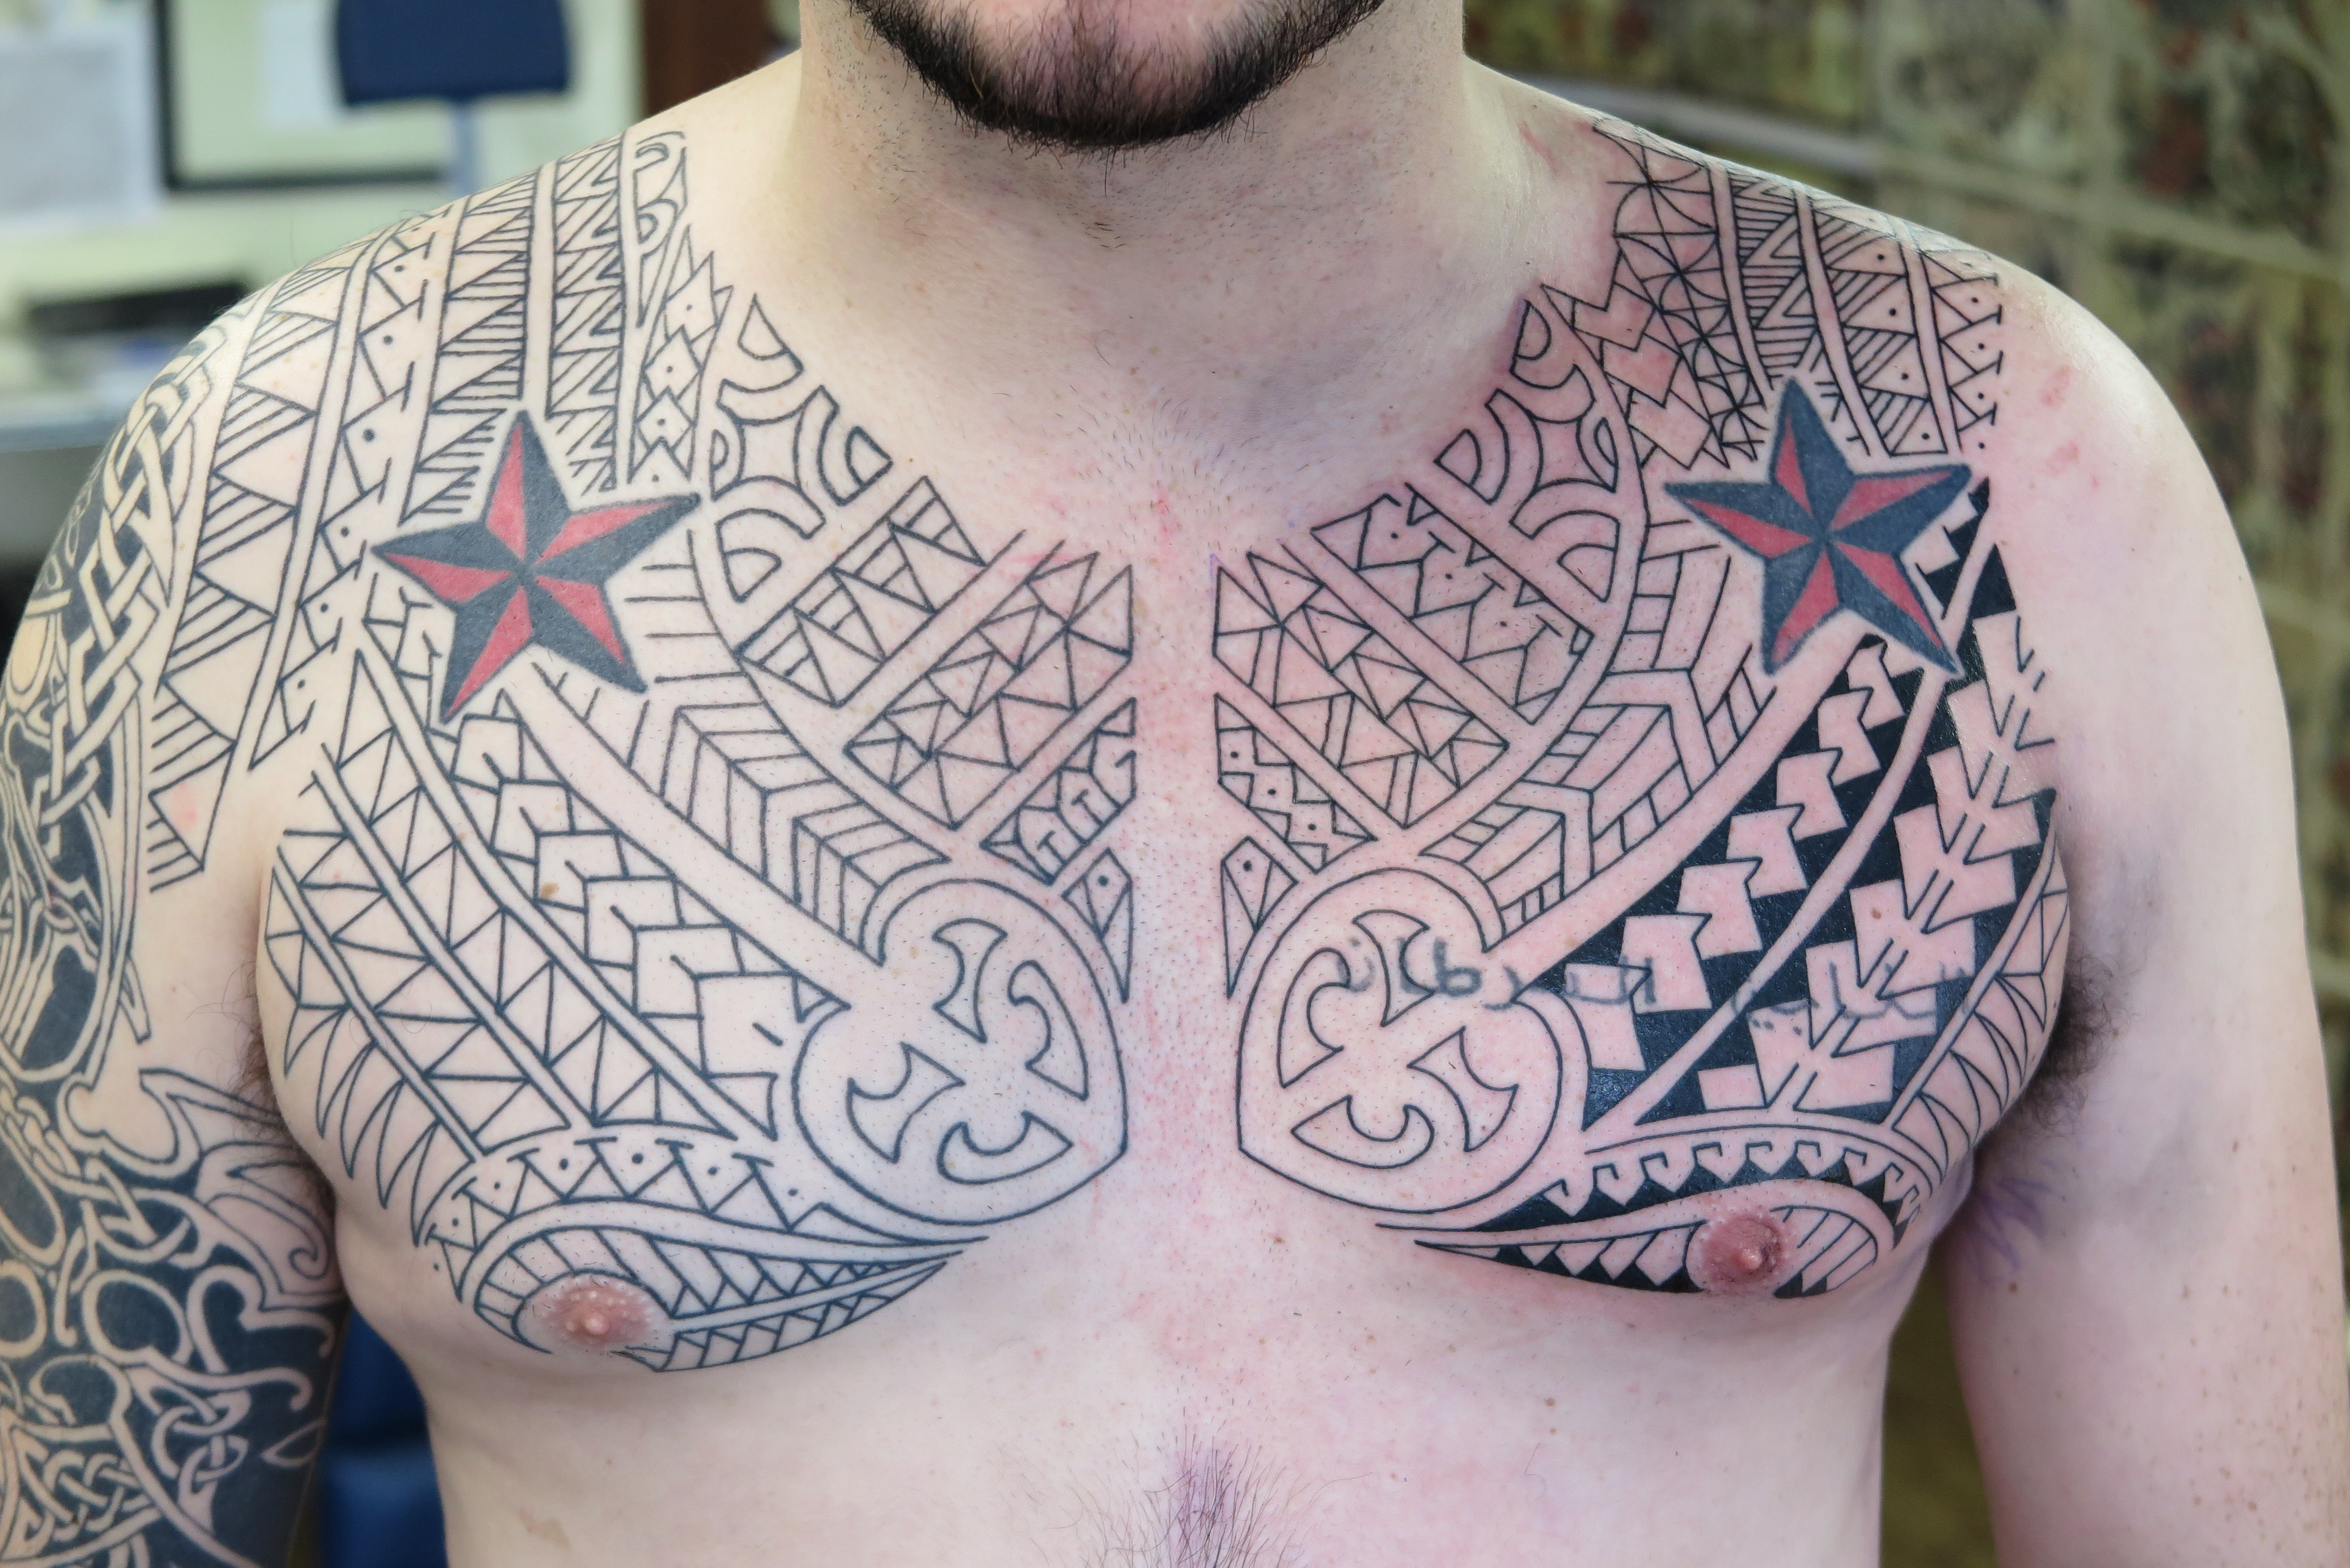 Tattoo uploaded by Pitbull Tattoo Patong Phuket Thailand  Polynesian Tattoo  PolynesianTattoos polynesiantattoo polynesian tattoooftheday tattoo  chest chesttattoo  Tattoodo